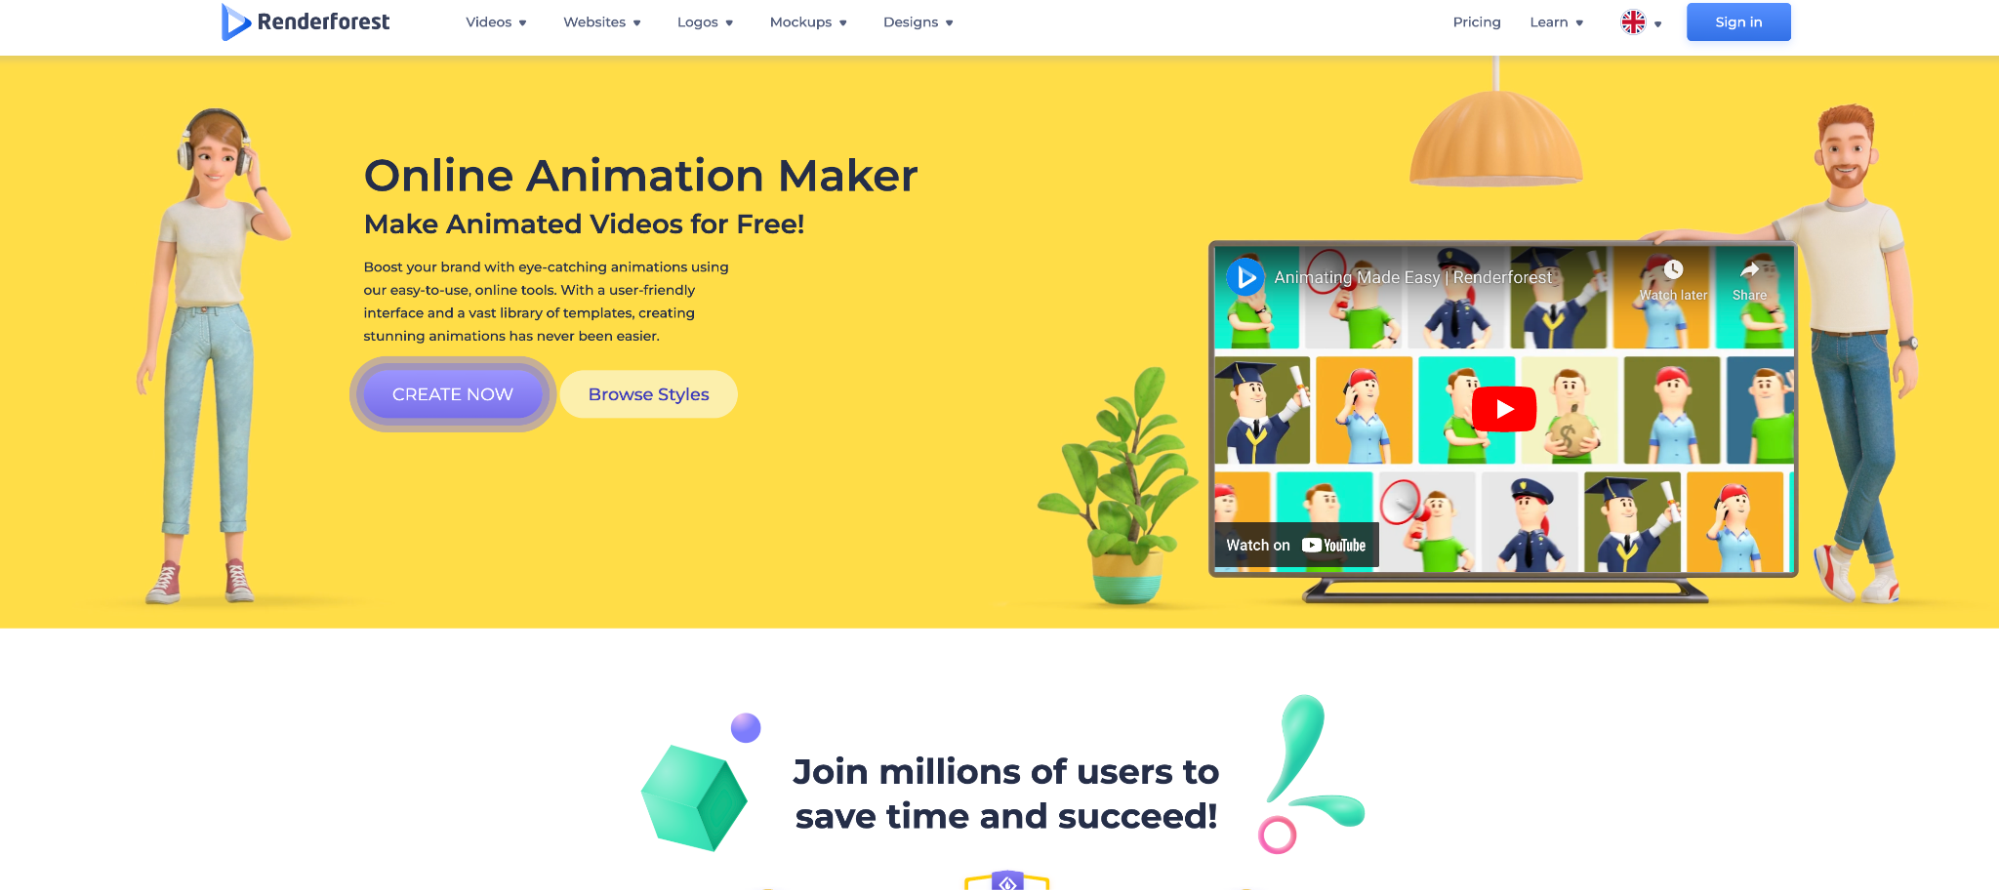 Online Animation Maker